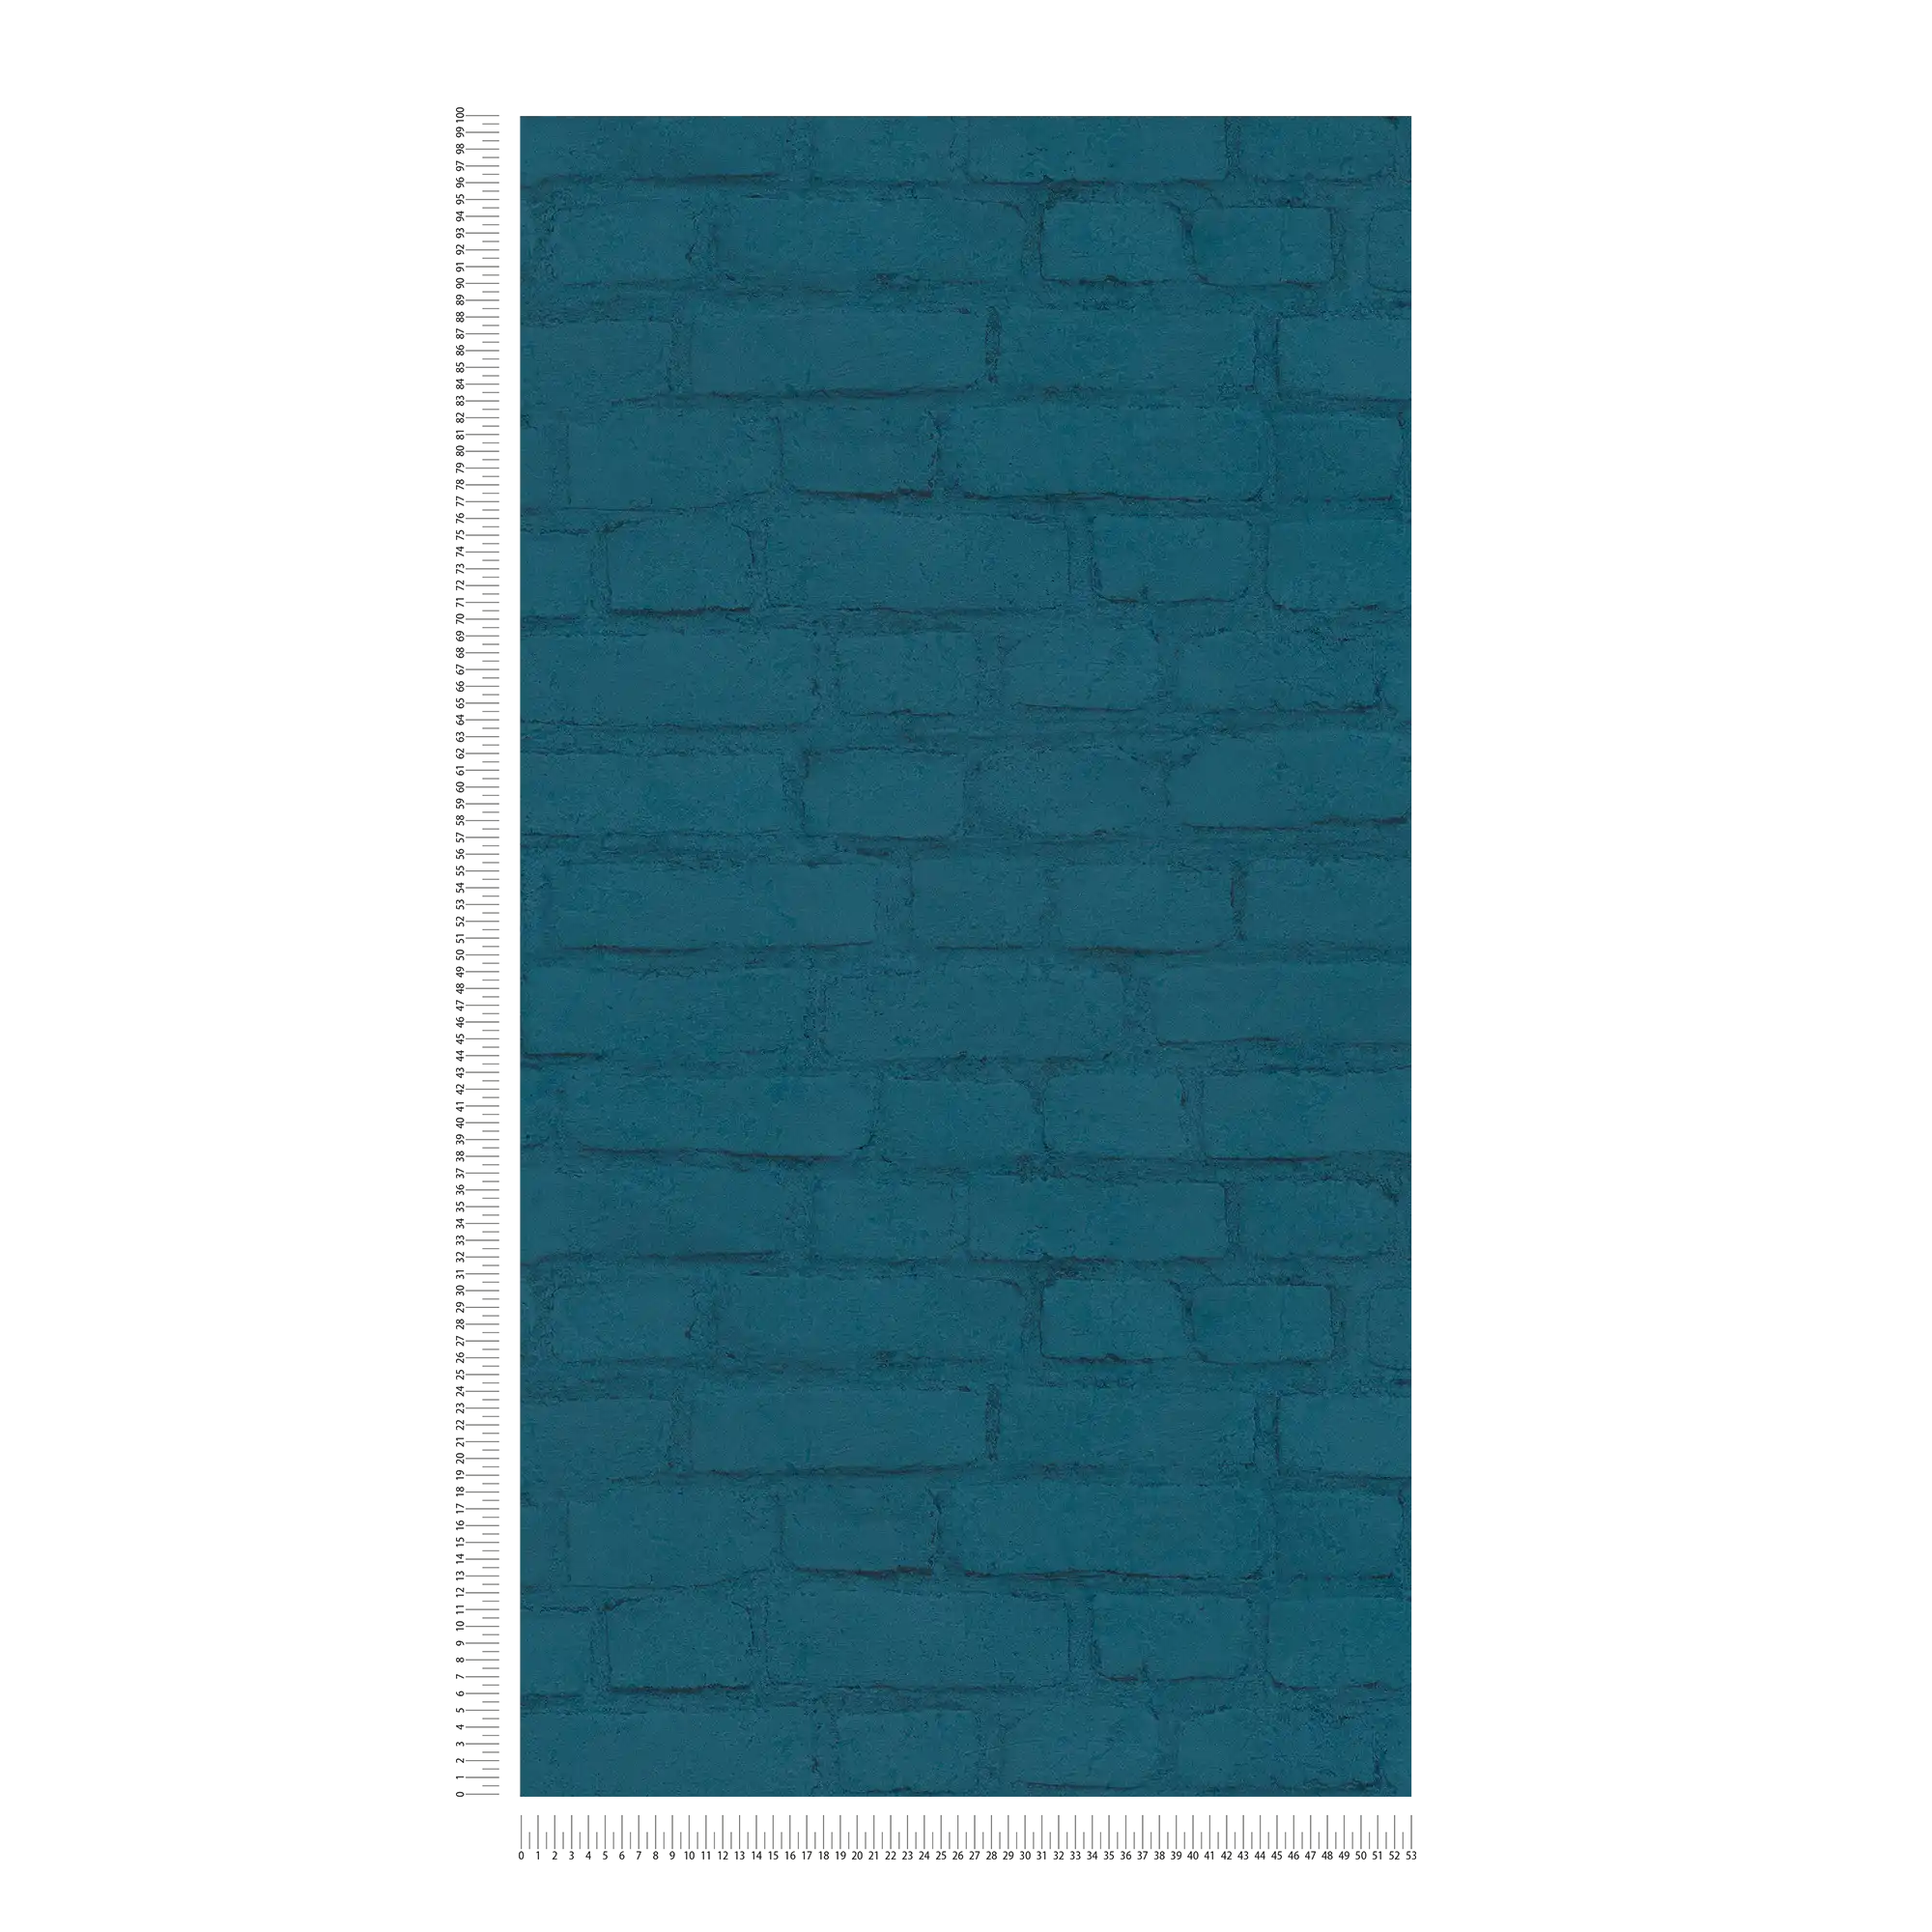             Steintapete Mauer in Klinker-Optik – Blau
        